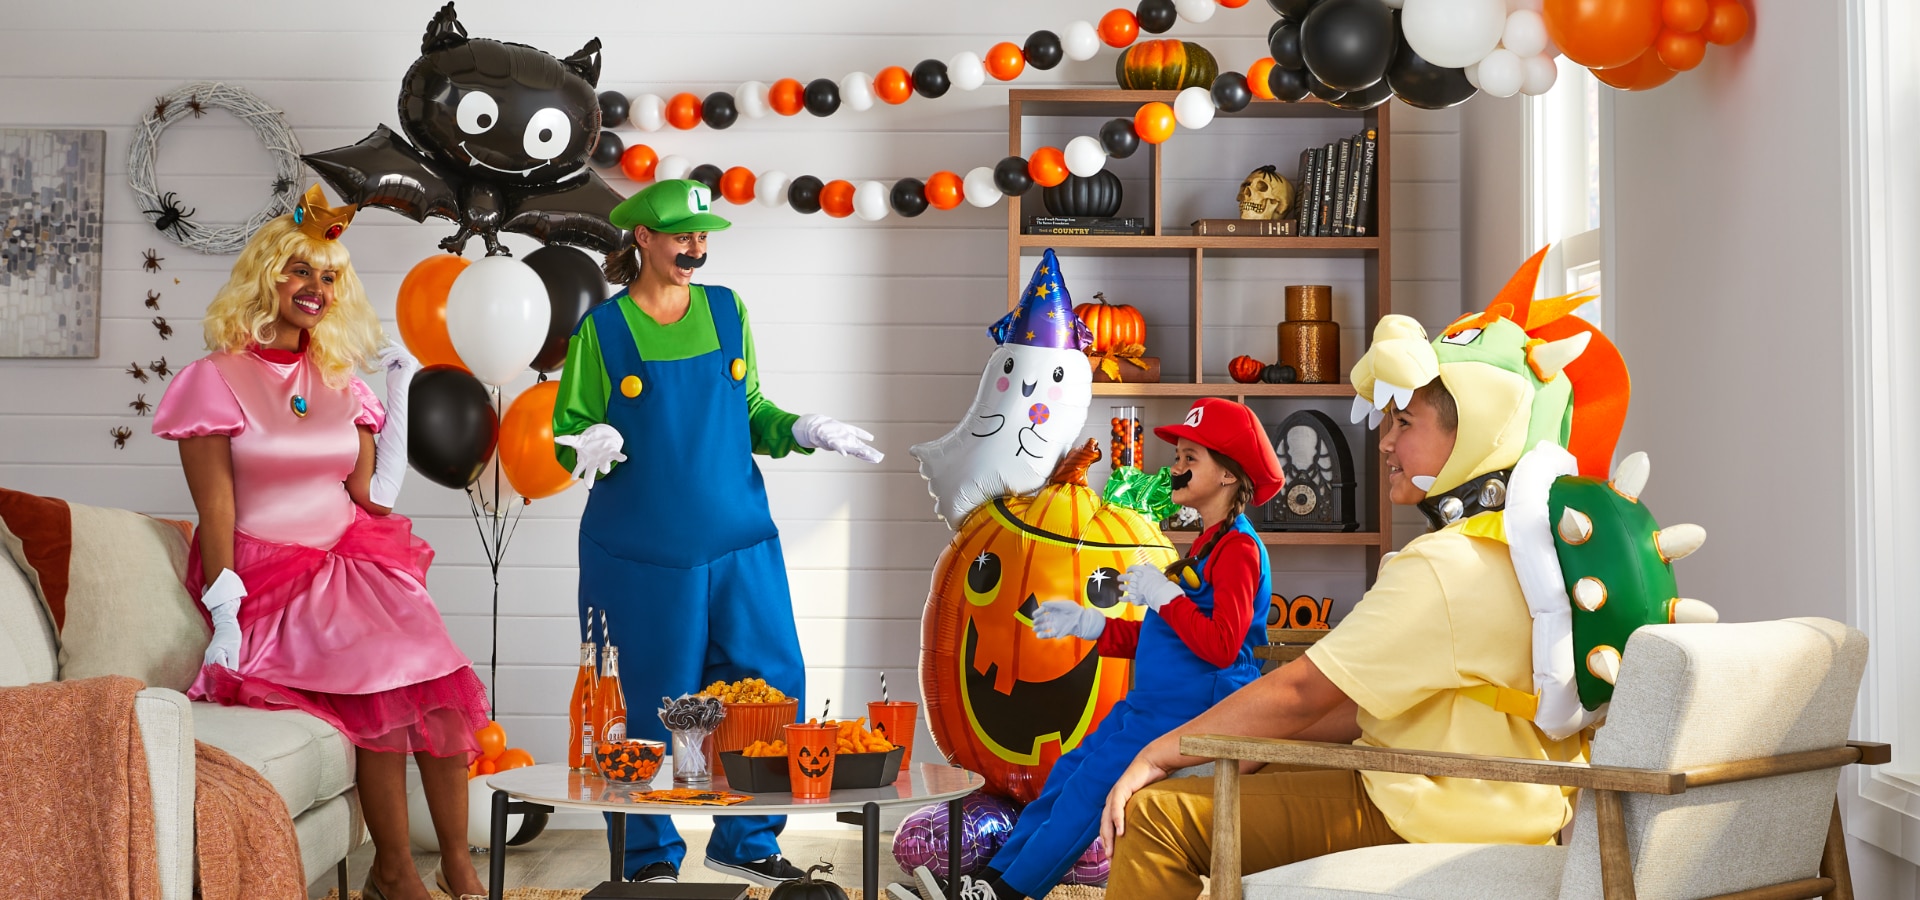 Une famille portant des costumes de personnages Super Mario dans un salon décoré de ballons et décorations d’Halloween.